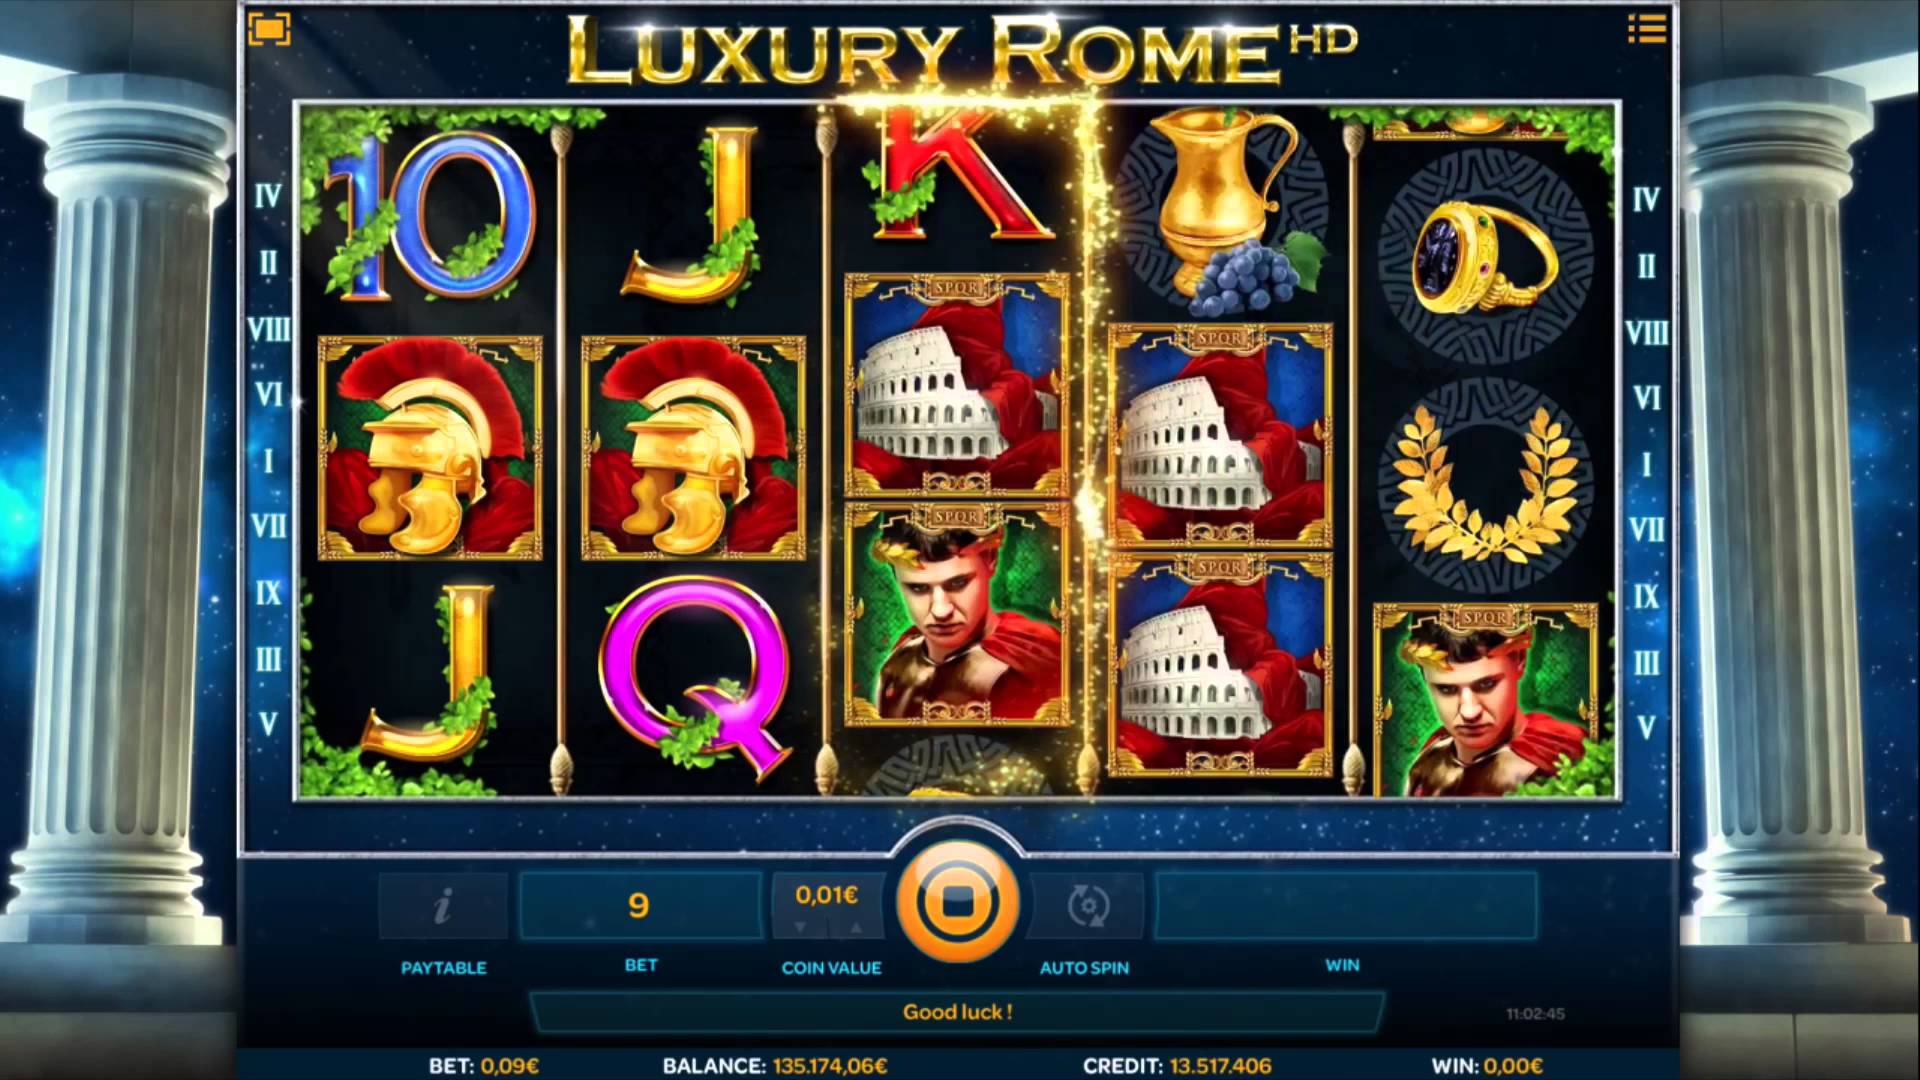 Luxury Rome HD gameplay